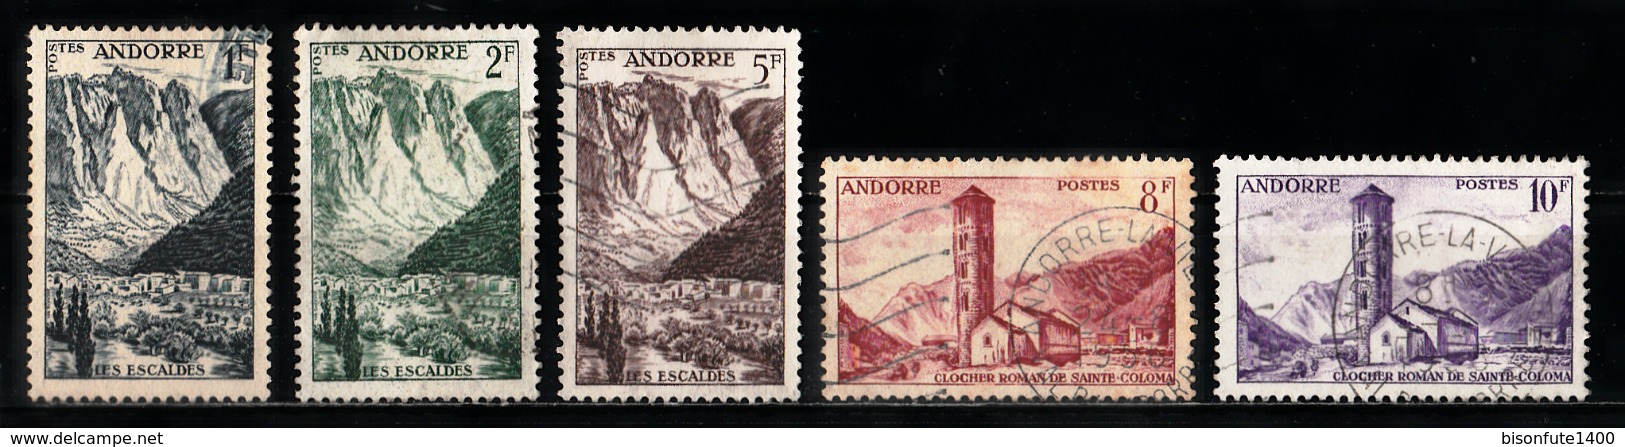 Andorre Français 1955 - 1958 : Timbres Yvert & Tellier N° 138 - 139 - 141 - 143 - 144 - 145 - 146 - 147 - 148 - 149 -... - Gebruikt